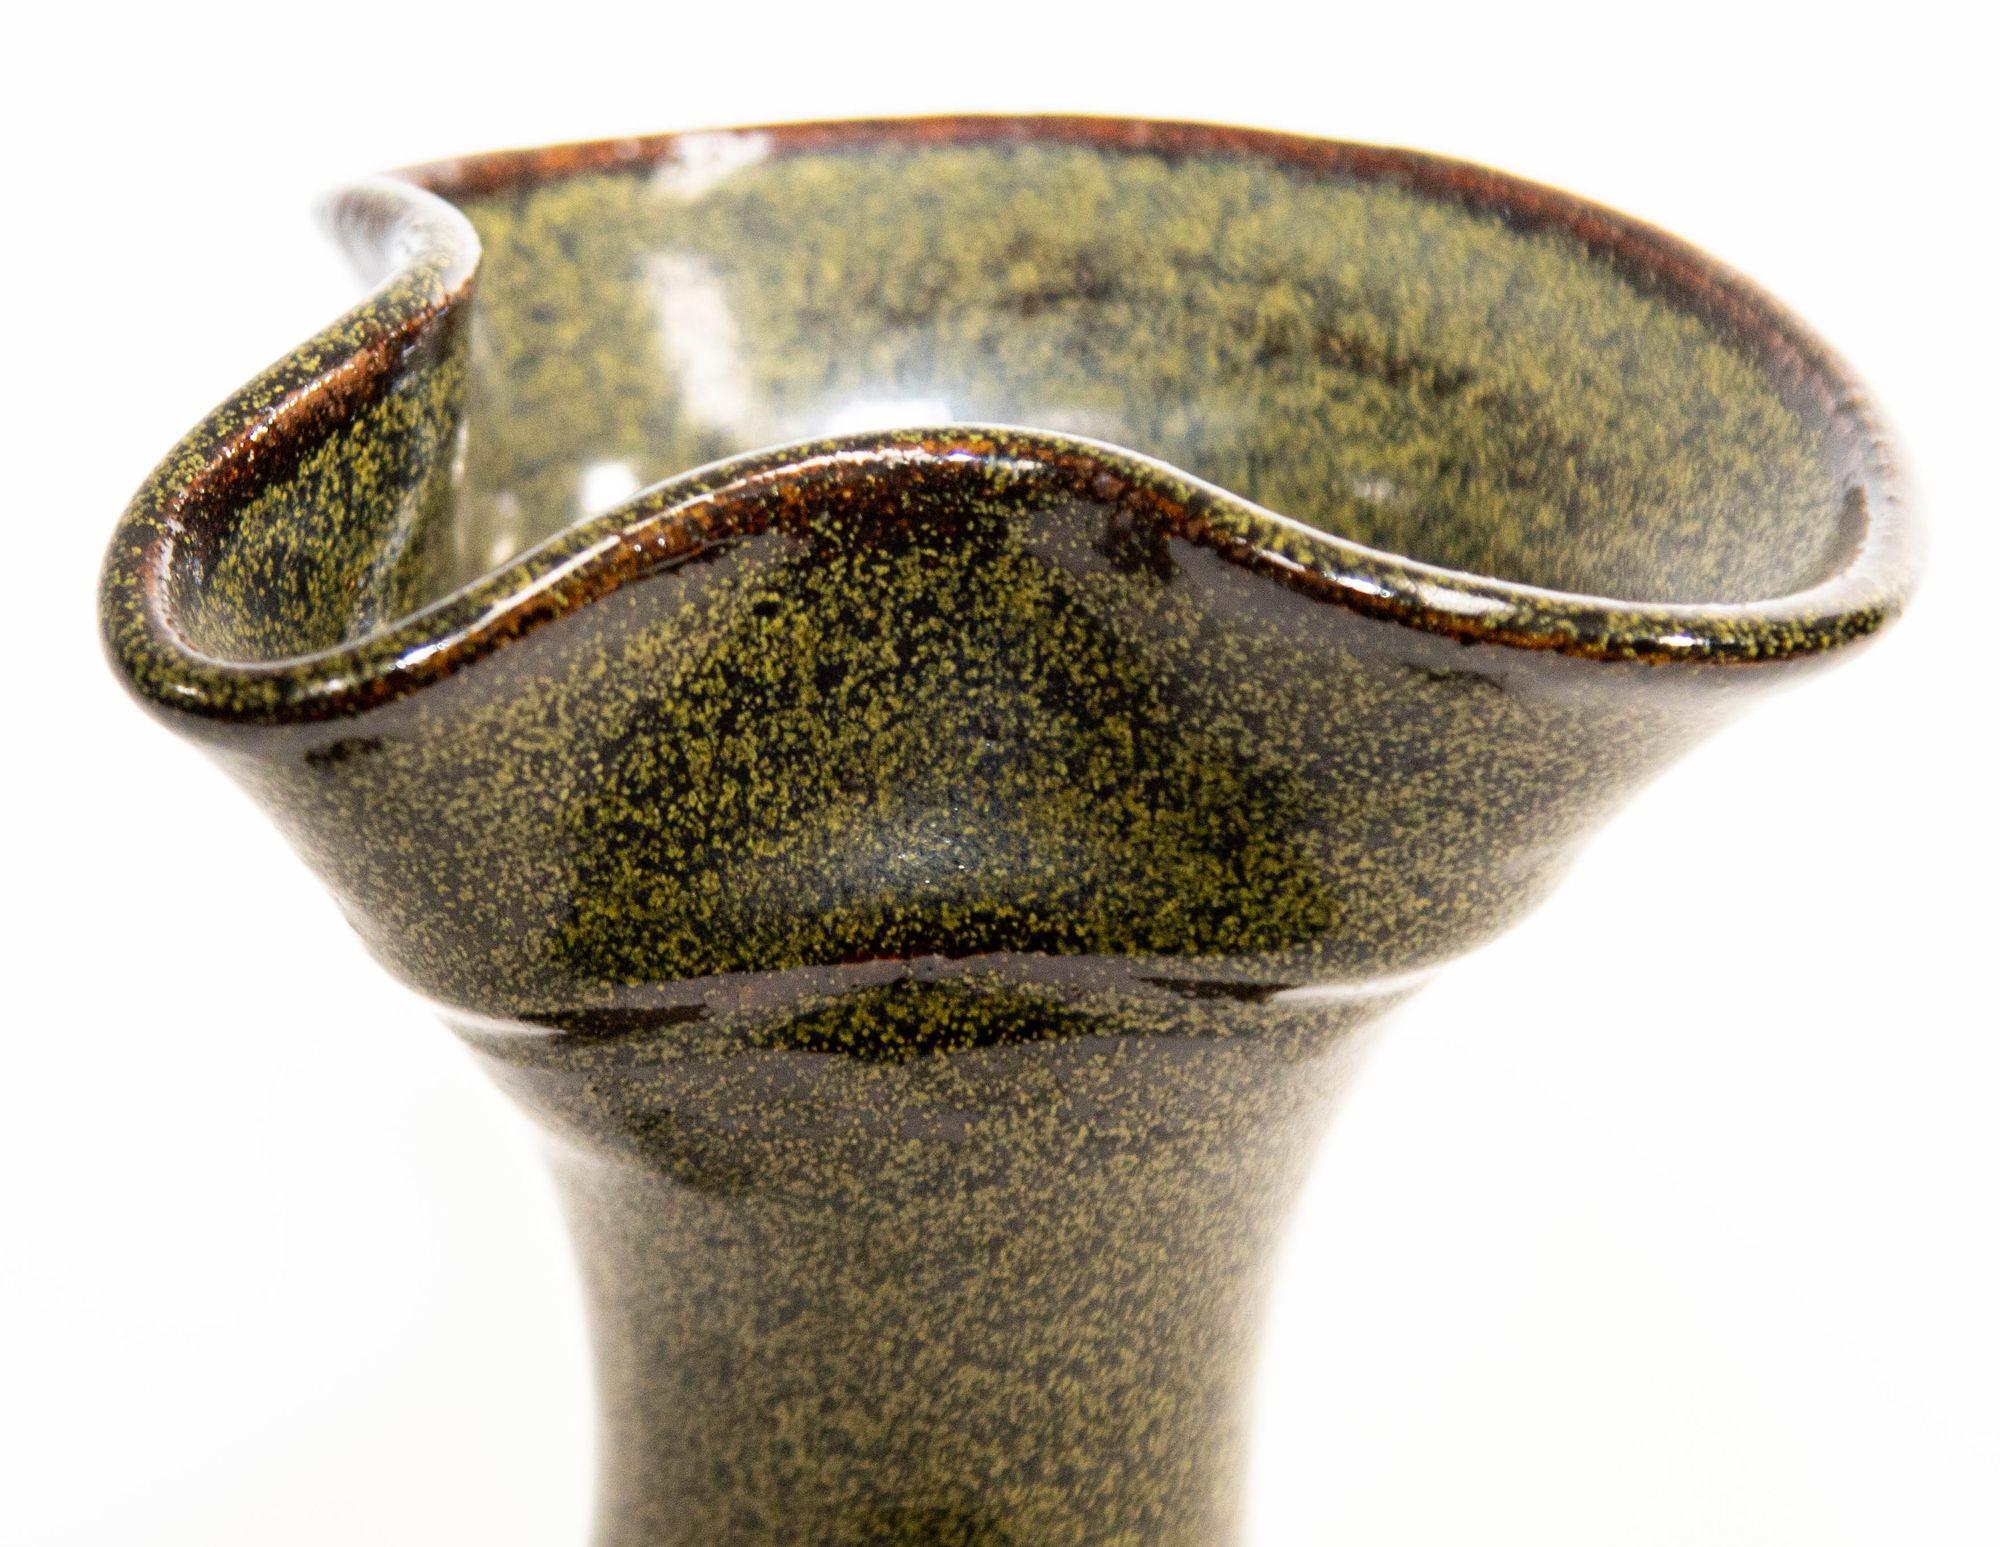 Vintage Studio California Design Stoneware Pottery Vase, années 1960.
Vase et pichet en grès de California Studio Pottery avec de beaux tons de terre brun et brun et vert foncé d'avocat.
Une belle composition de couleurs et de textures, ce pot est